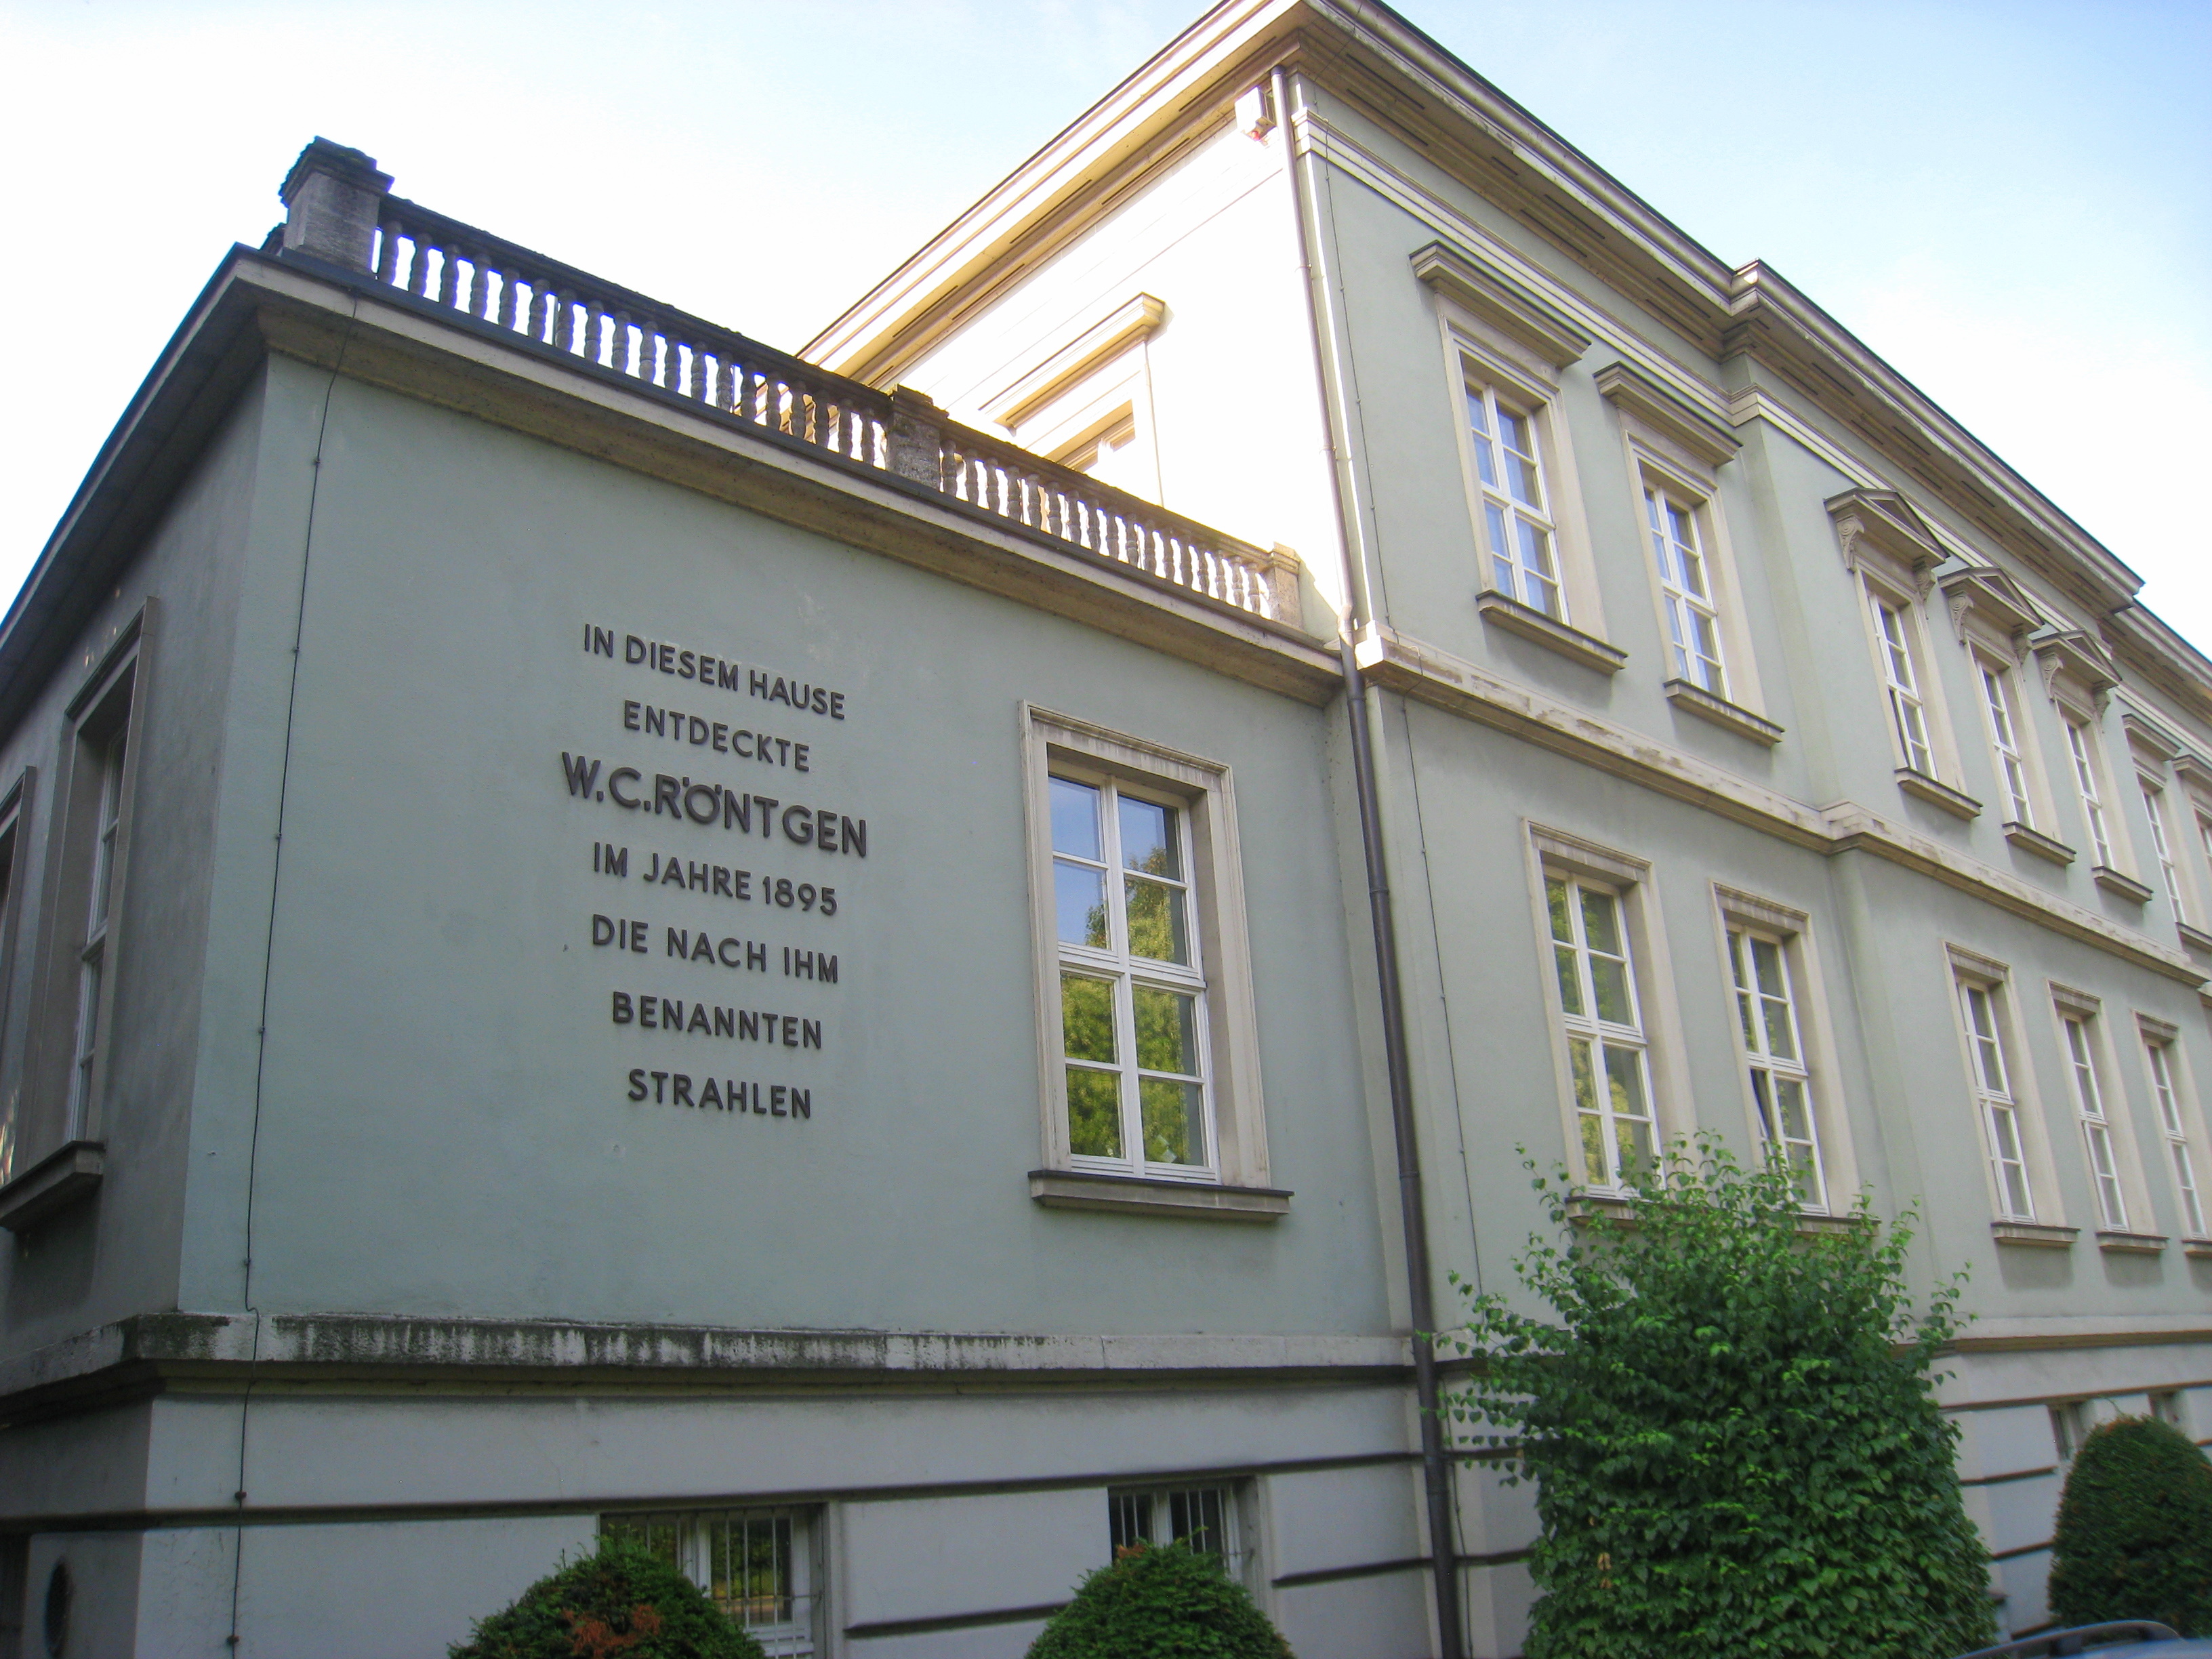 متحف فيلهلم كونراد رونتجن